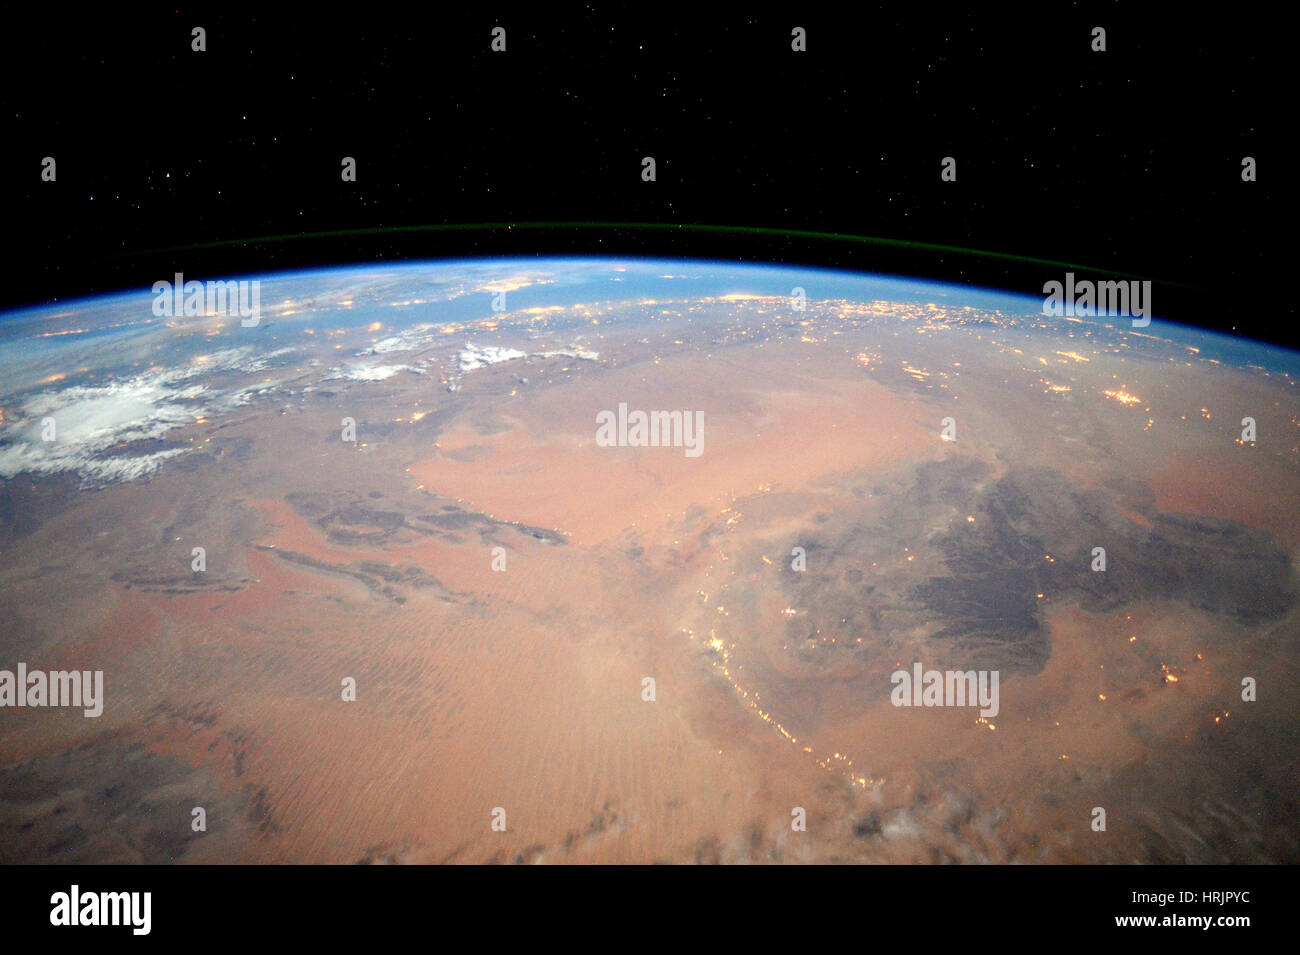 Sahara Desert at Night, ISS View Stock Photo